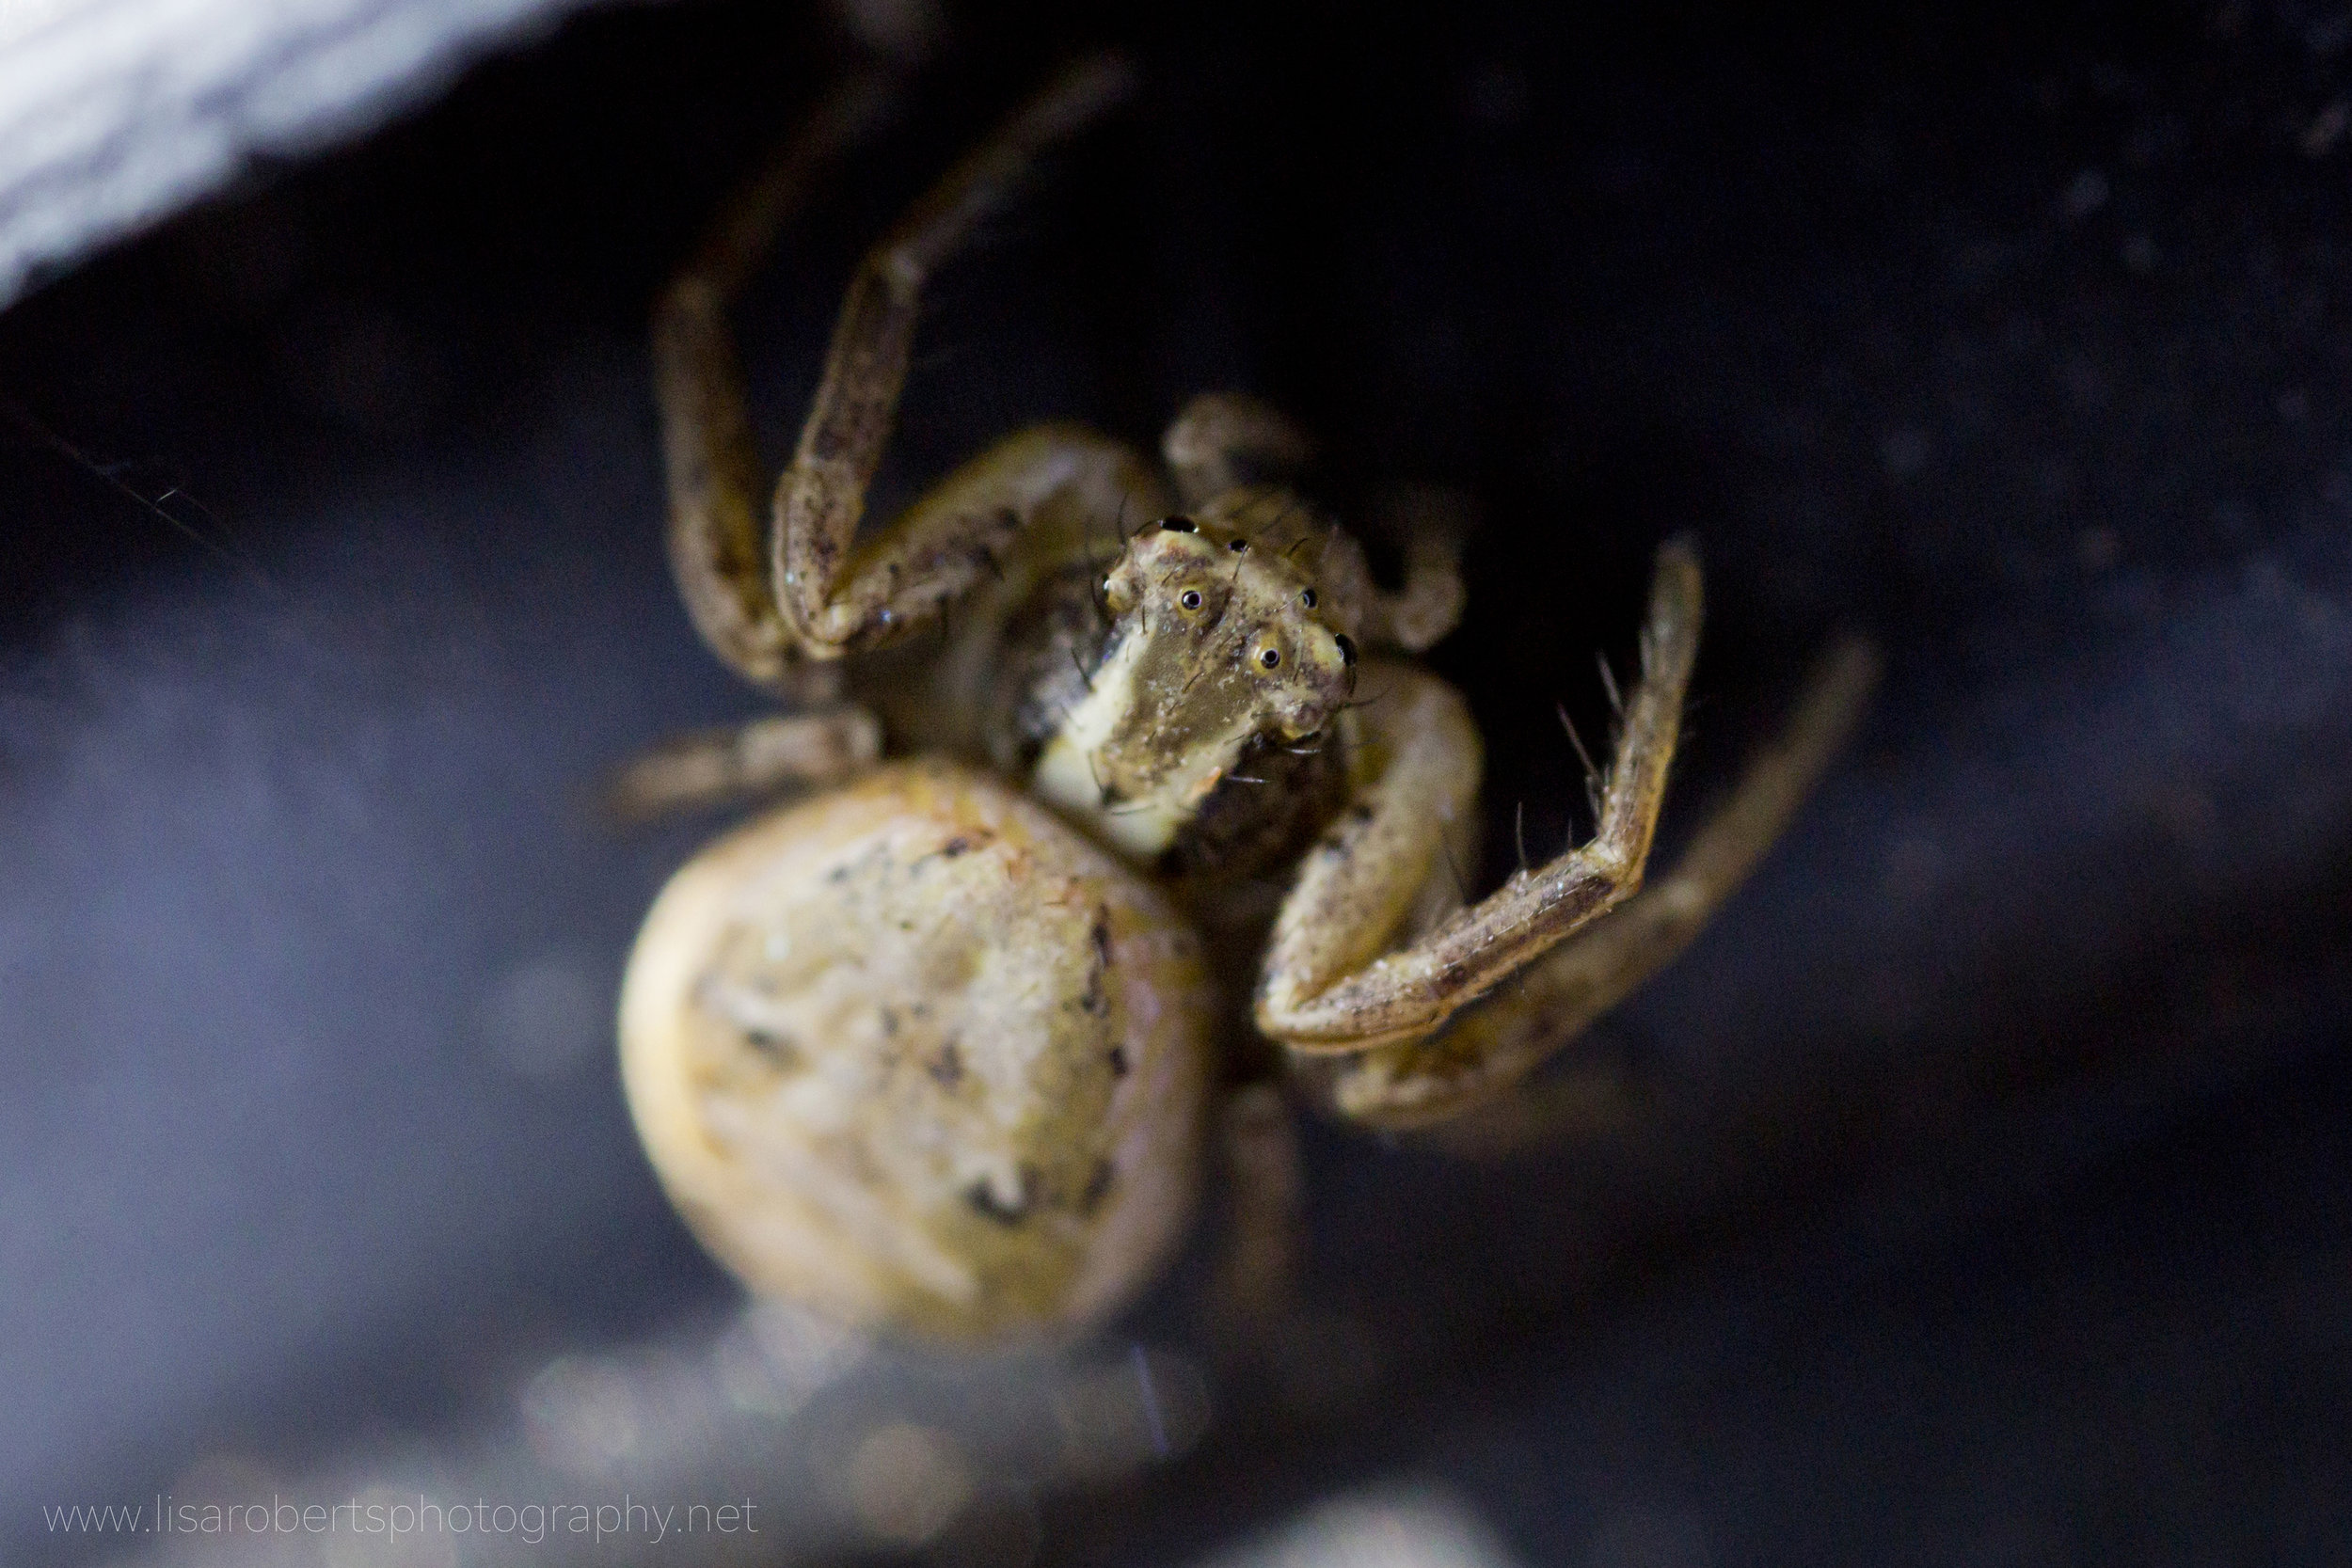  Garden Spider, head close-up 